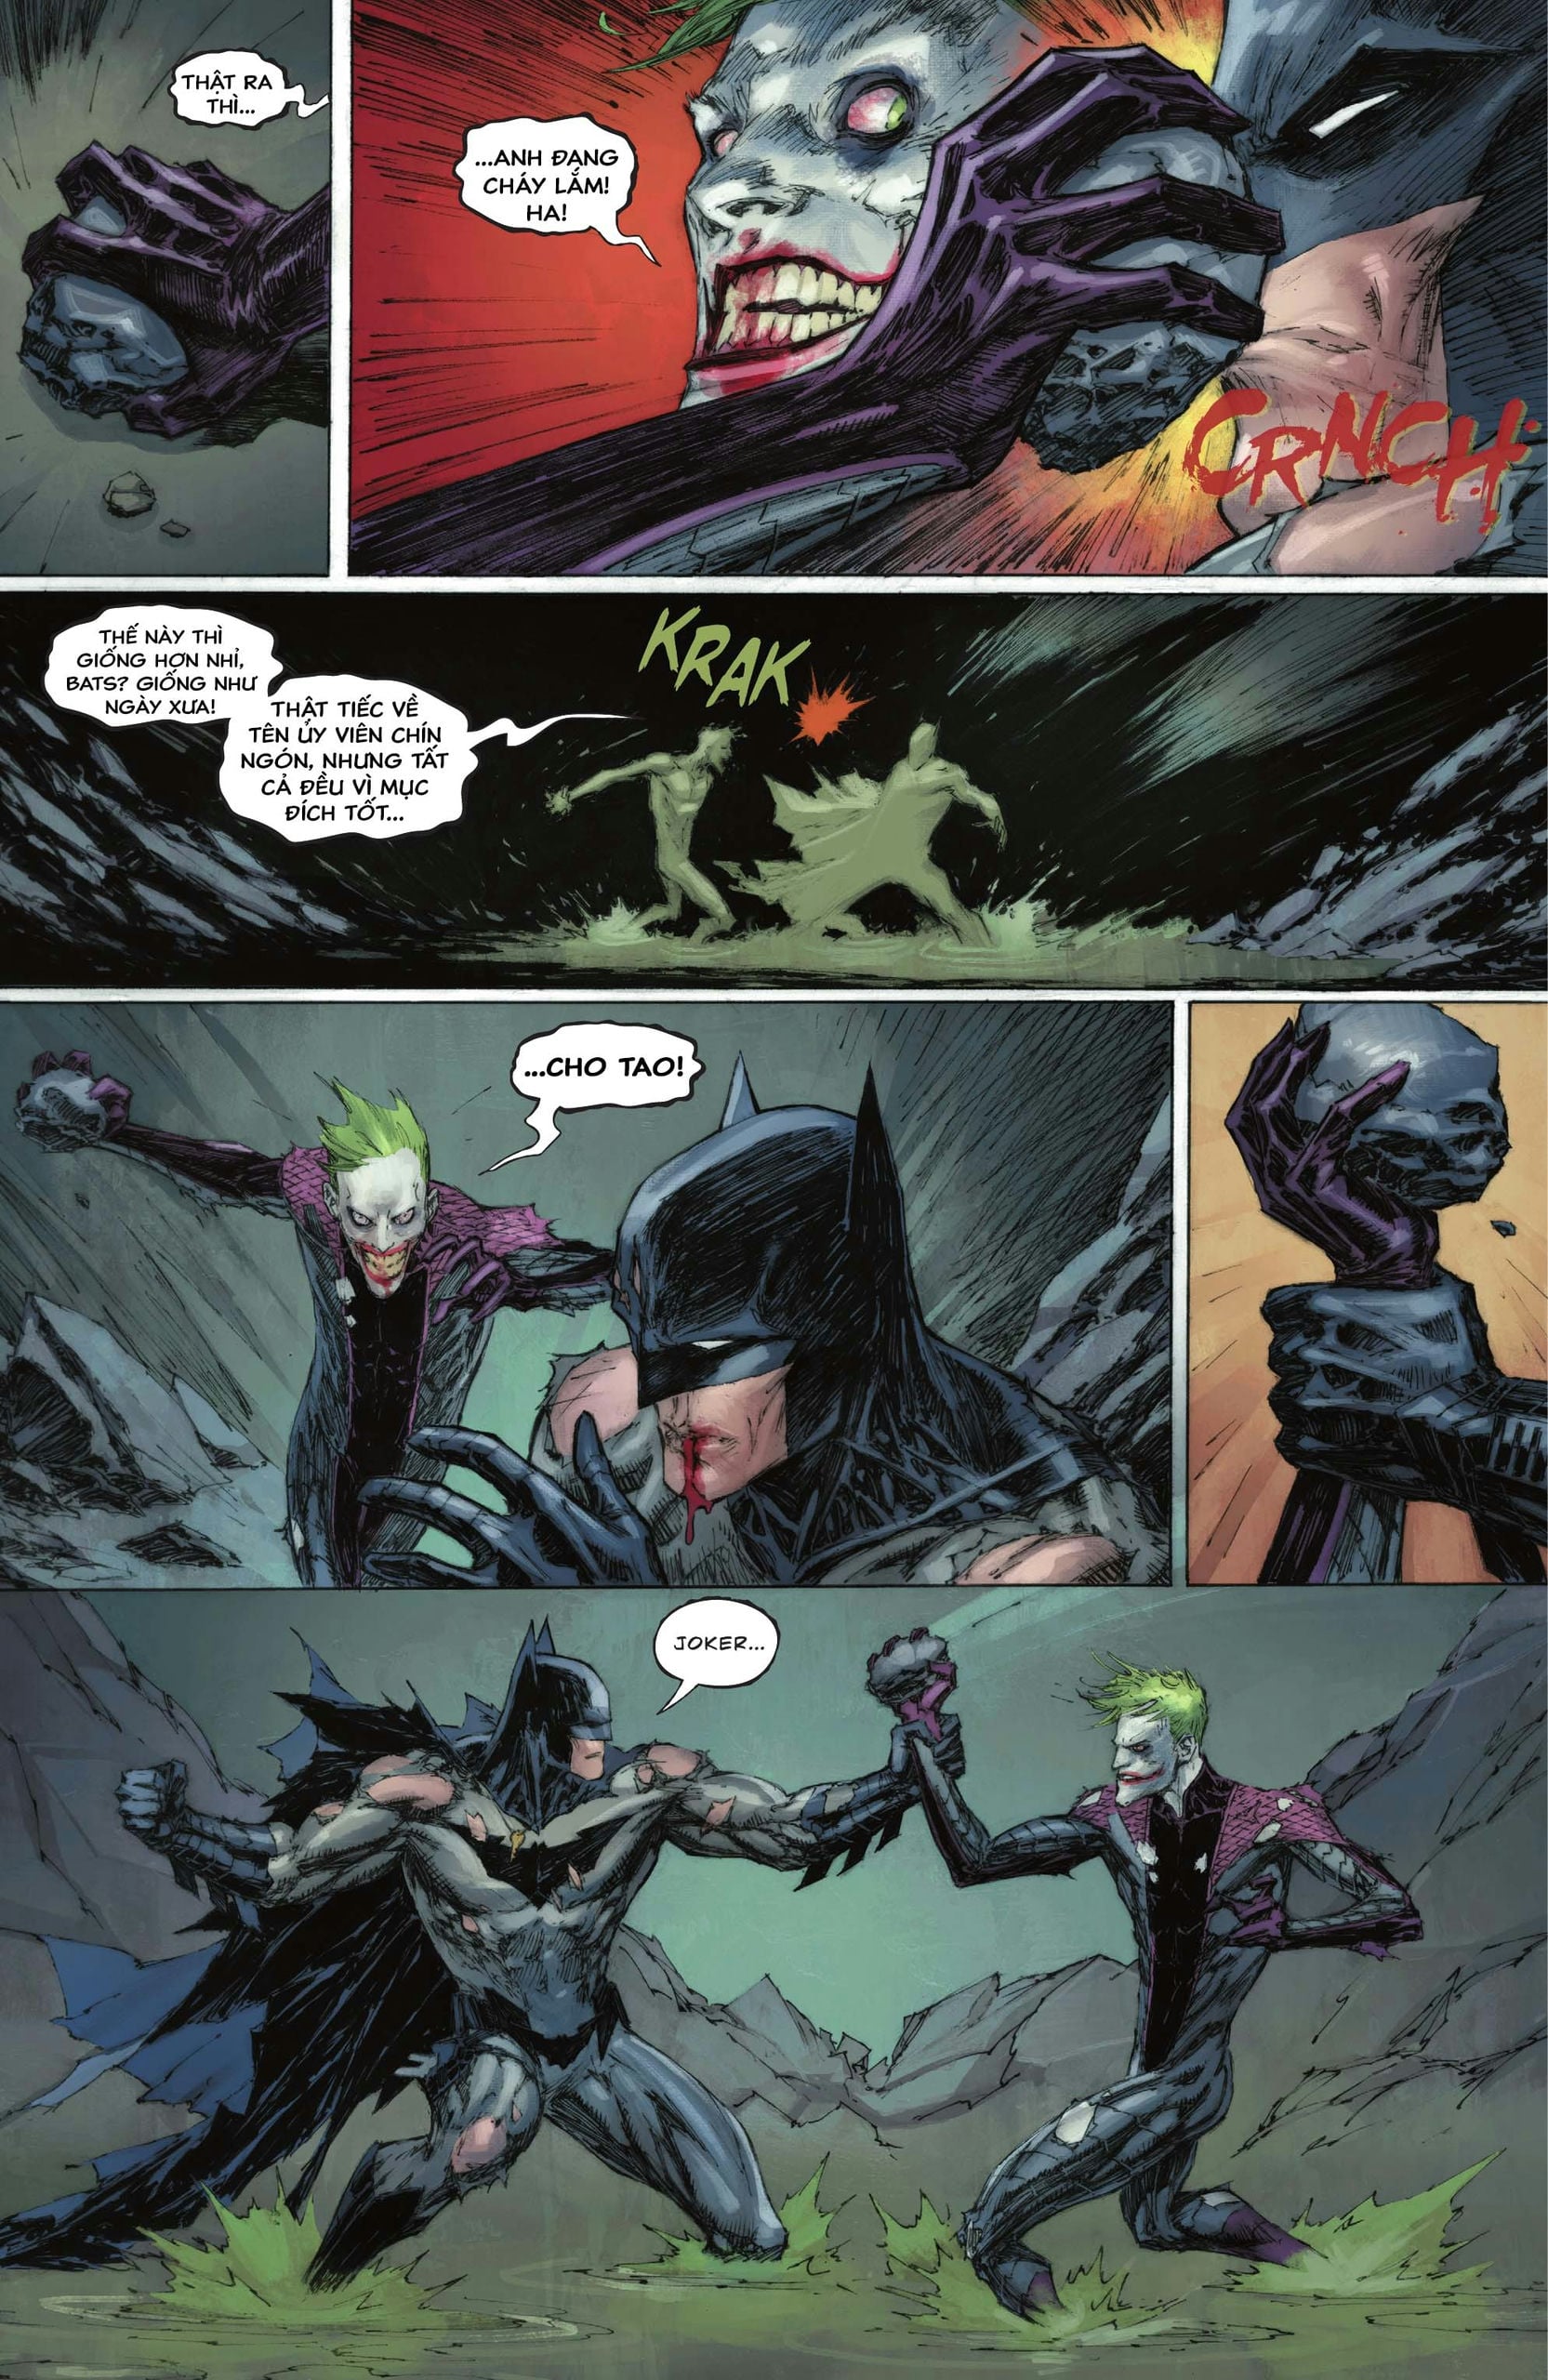 https://langgeek.net/wp-content/webpc-passthru.php?src=https://langgeek.net/wp-content/uploads/2023/05/Batman-_-The-Joker-The-Deadly-Duo-2022-007-007.jpg&nocache=1